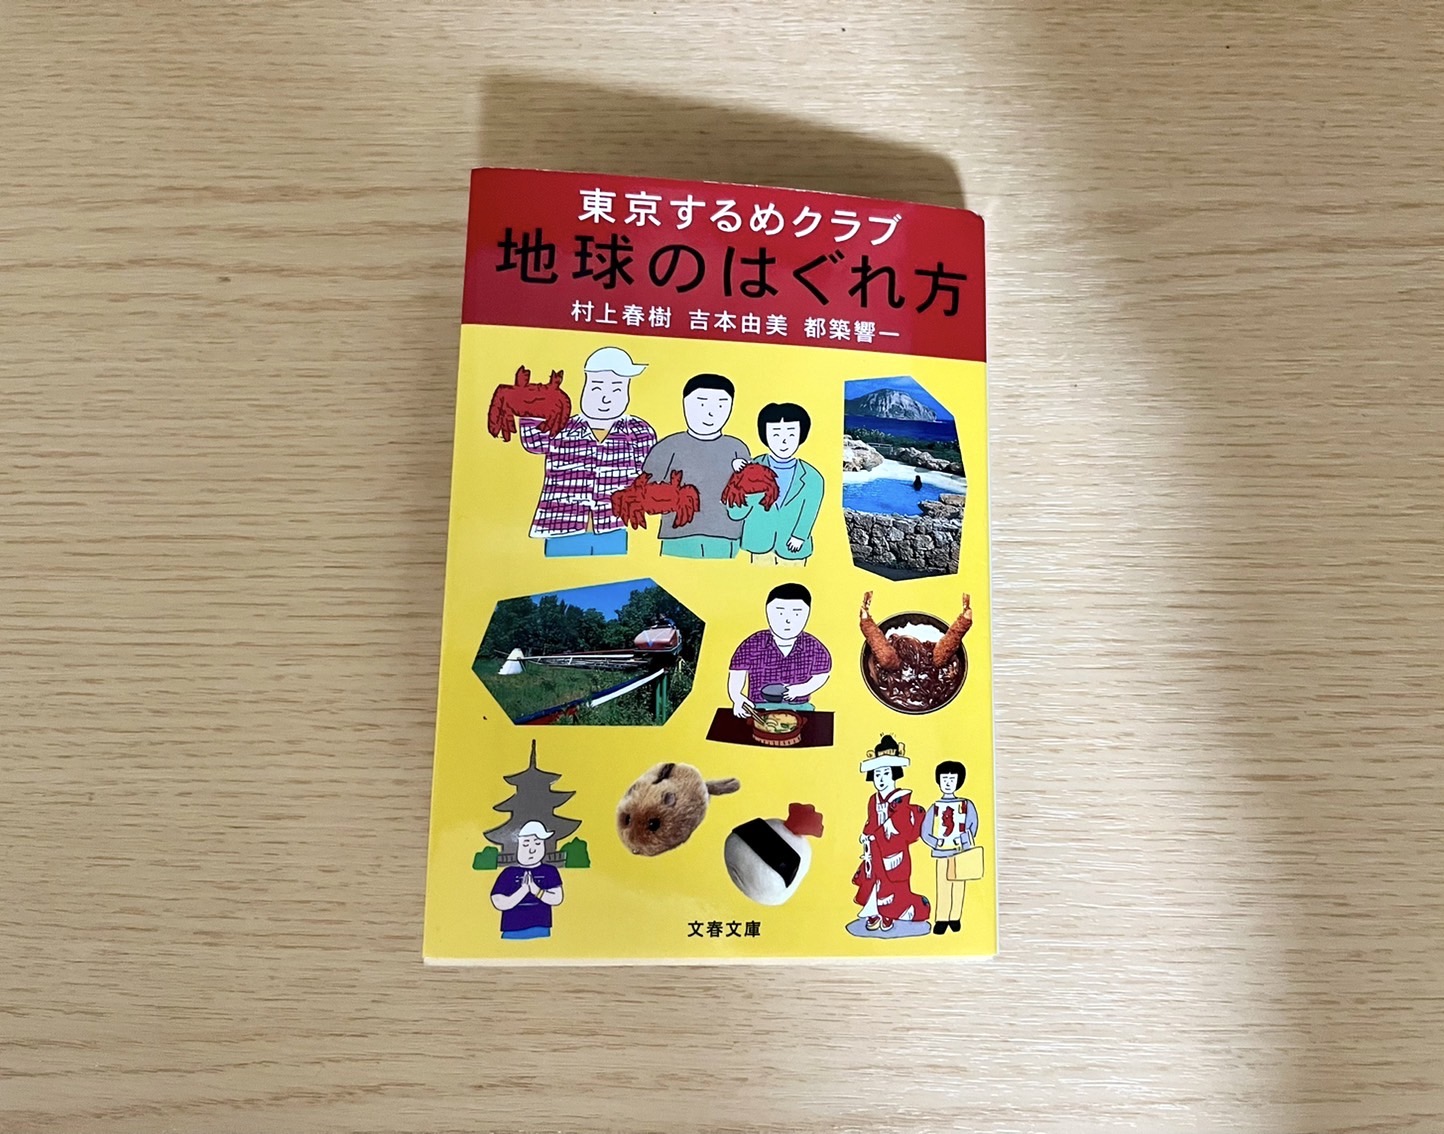 連載 本と生活と Vol 34 東京するめクラブ 地球のはぐれ方 Storywriter